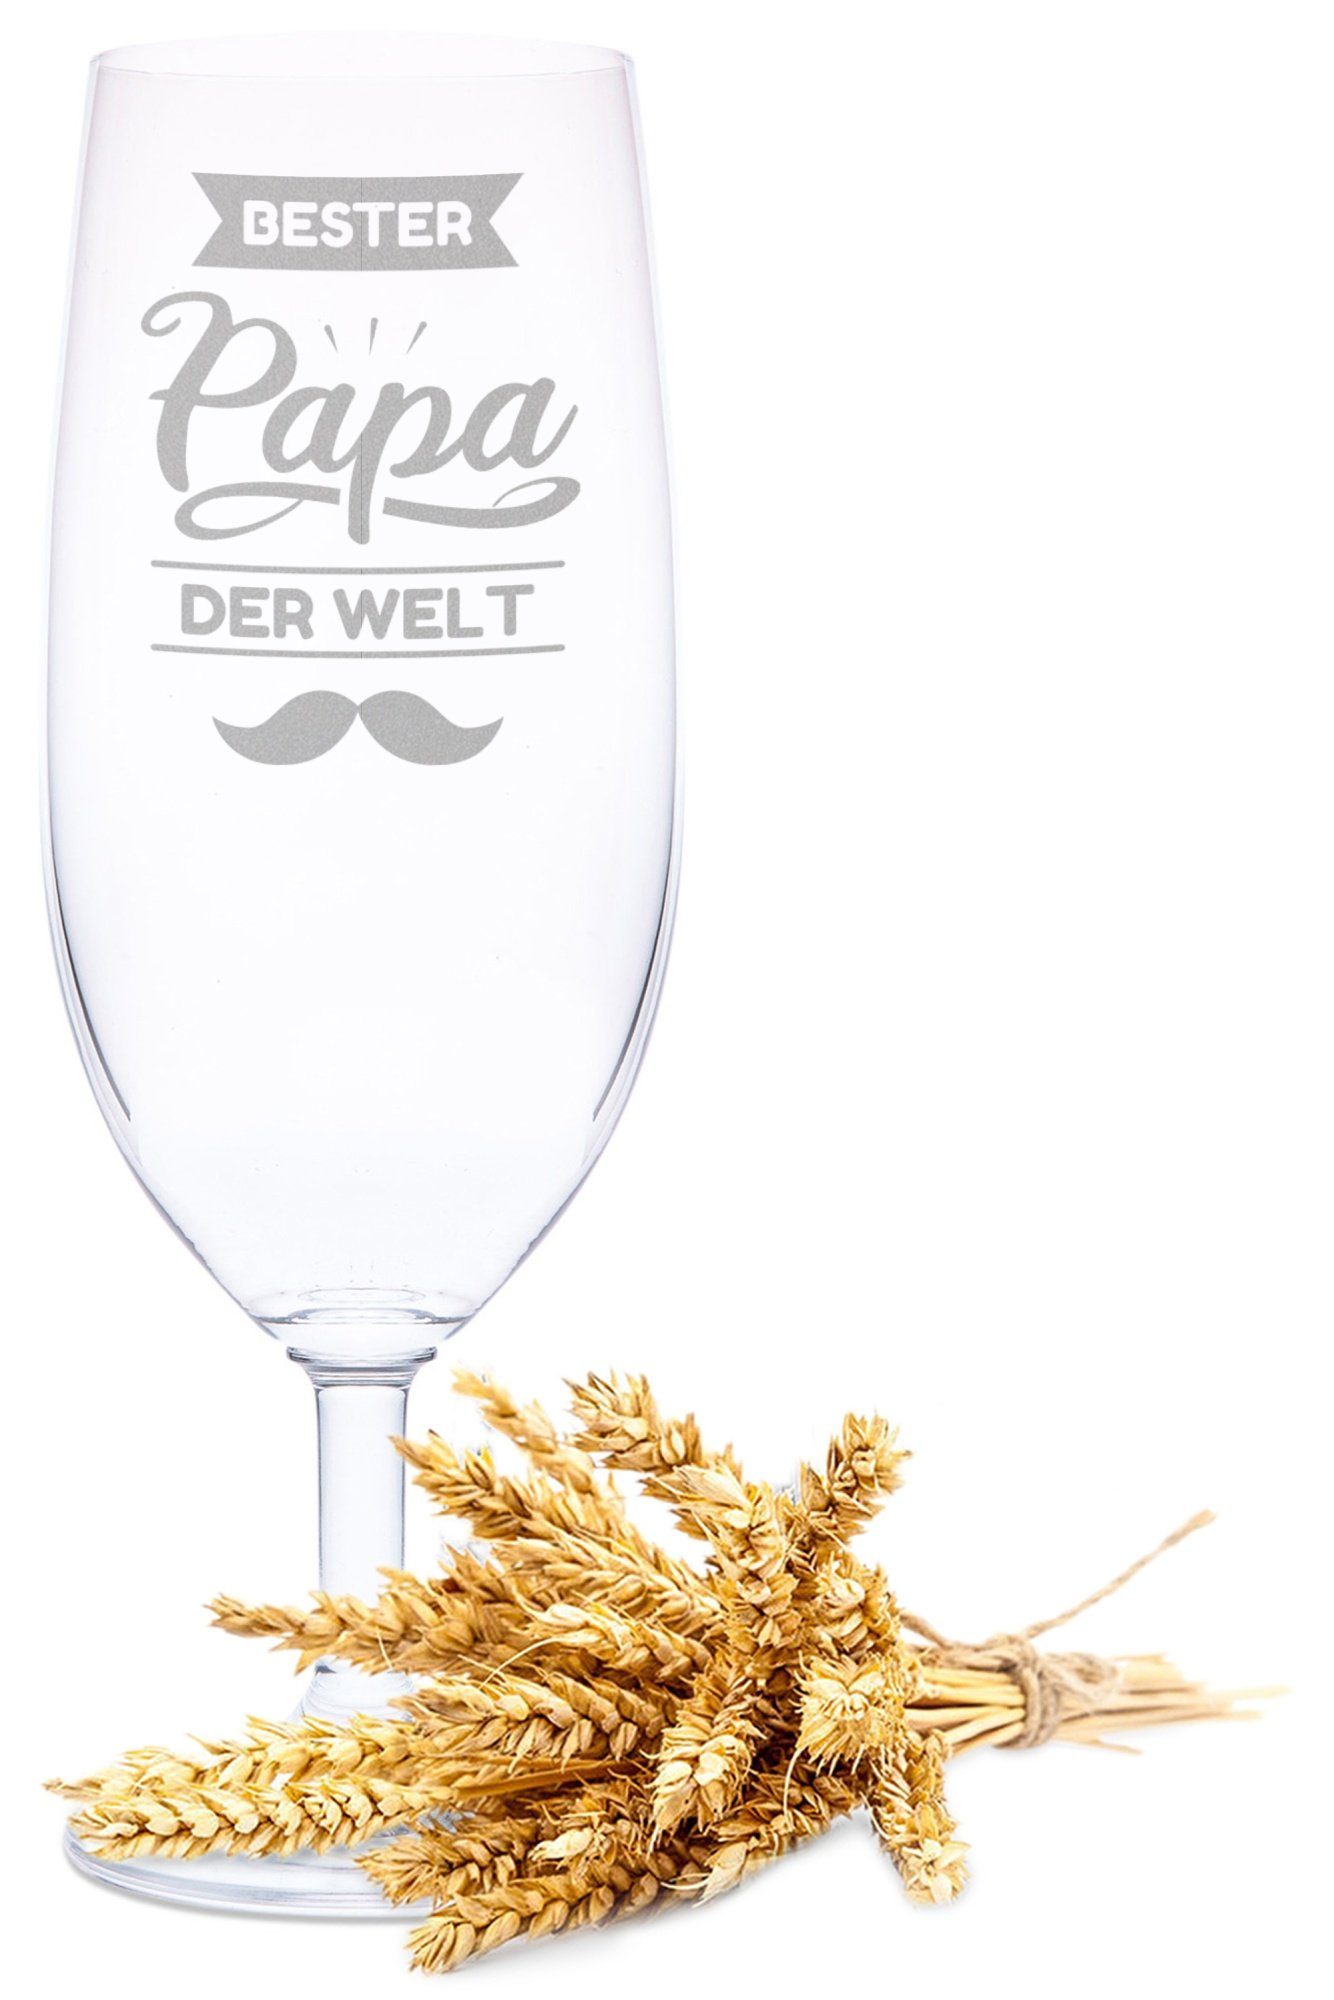 GRAVURZEILE Bierglas Leonardo Bierglas mit Gravur - Bester Papa der Welt V2, Glas, Geschenk für Papa zum Vatertag - 360 ml